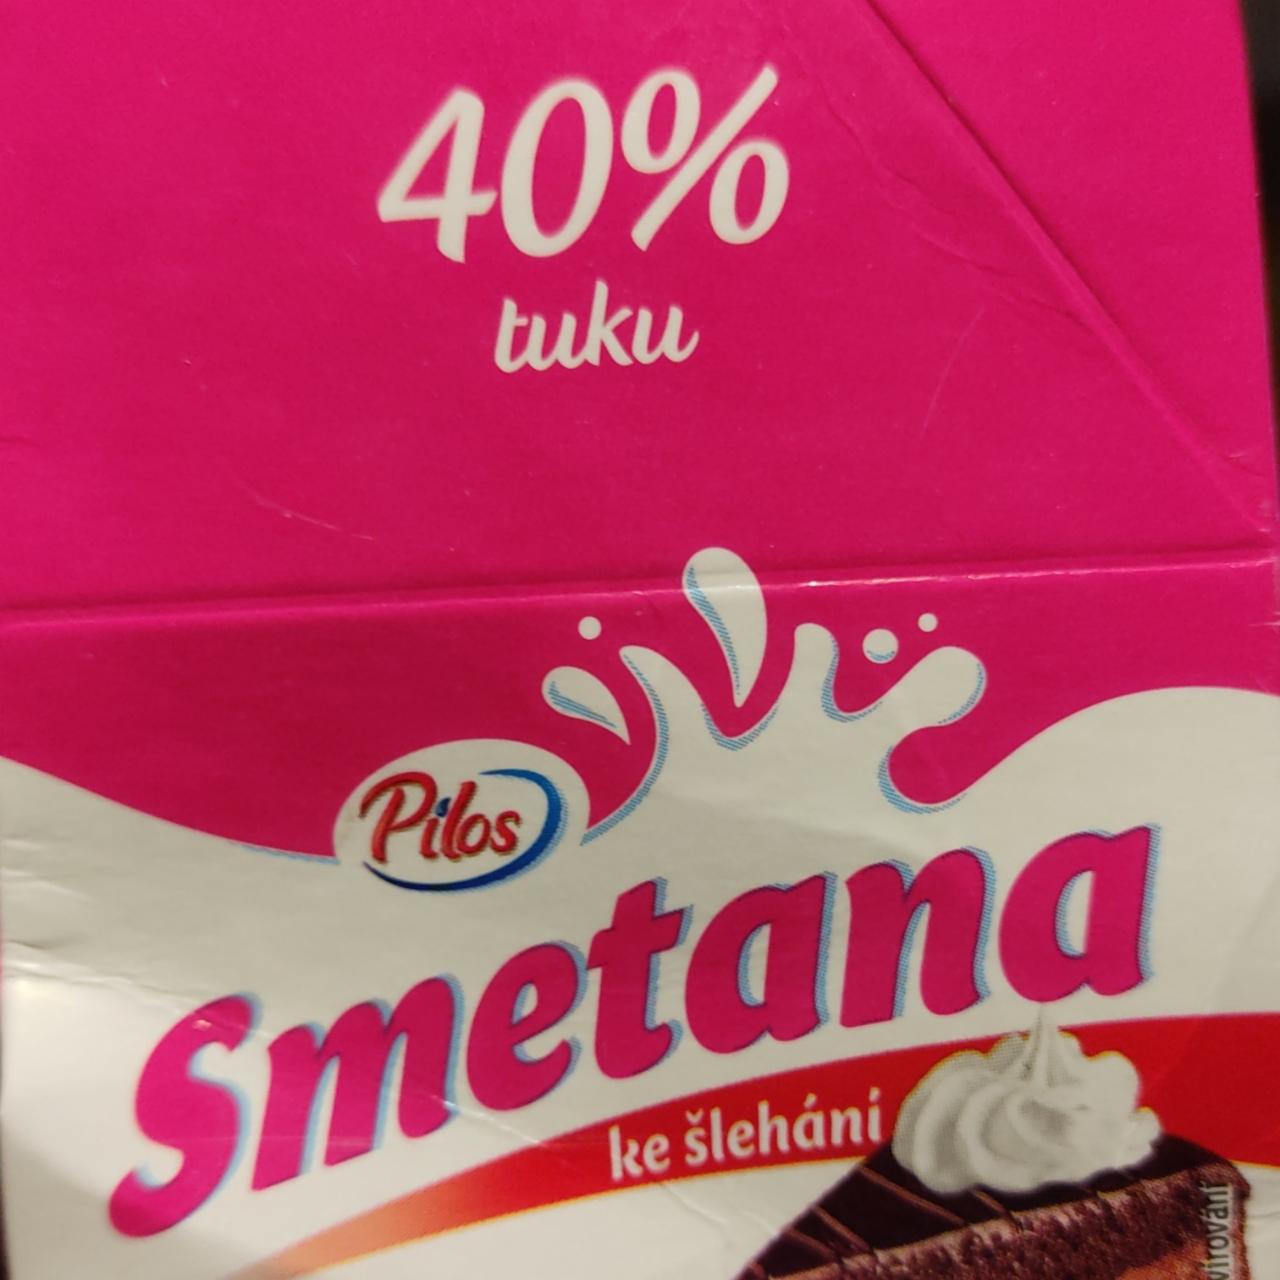 Fotografie - Smetana ke šlehání 40% tuku Pilos